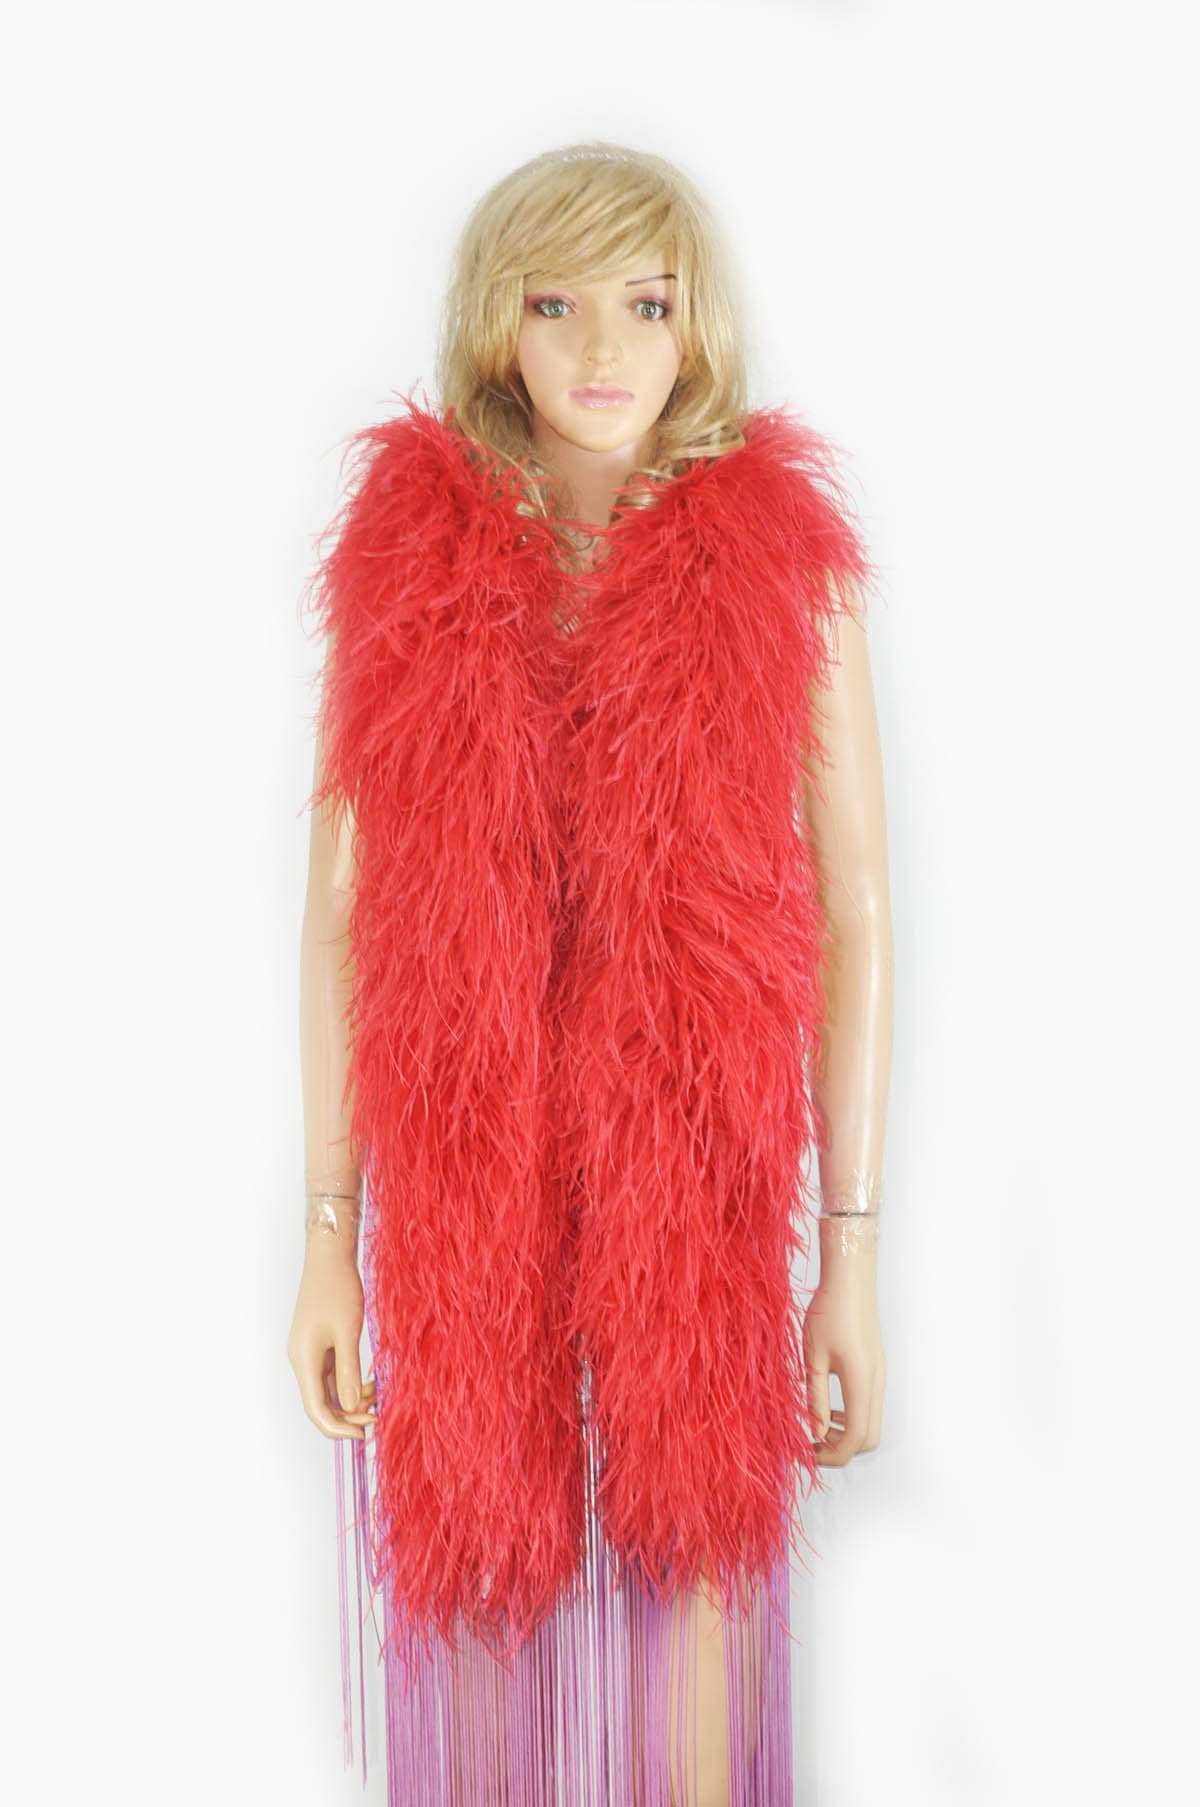 Boas de plumas color rojo rosa, disfraz de boa de plumas de avestruz de  6.56 pies, tiras de plumas naturales decorativas para árbol de Navidad,  boda